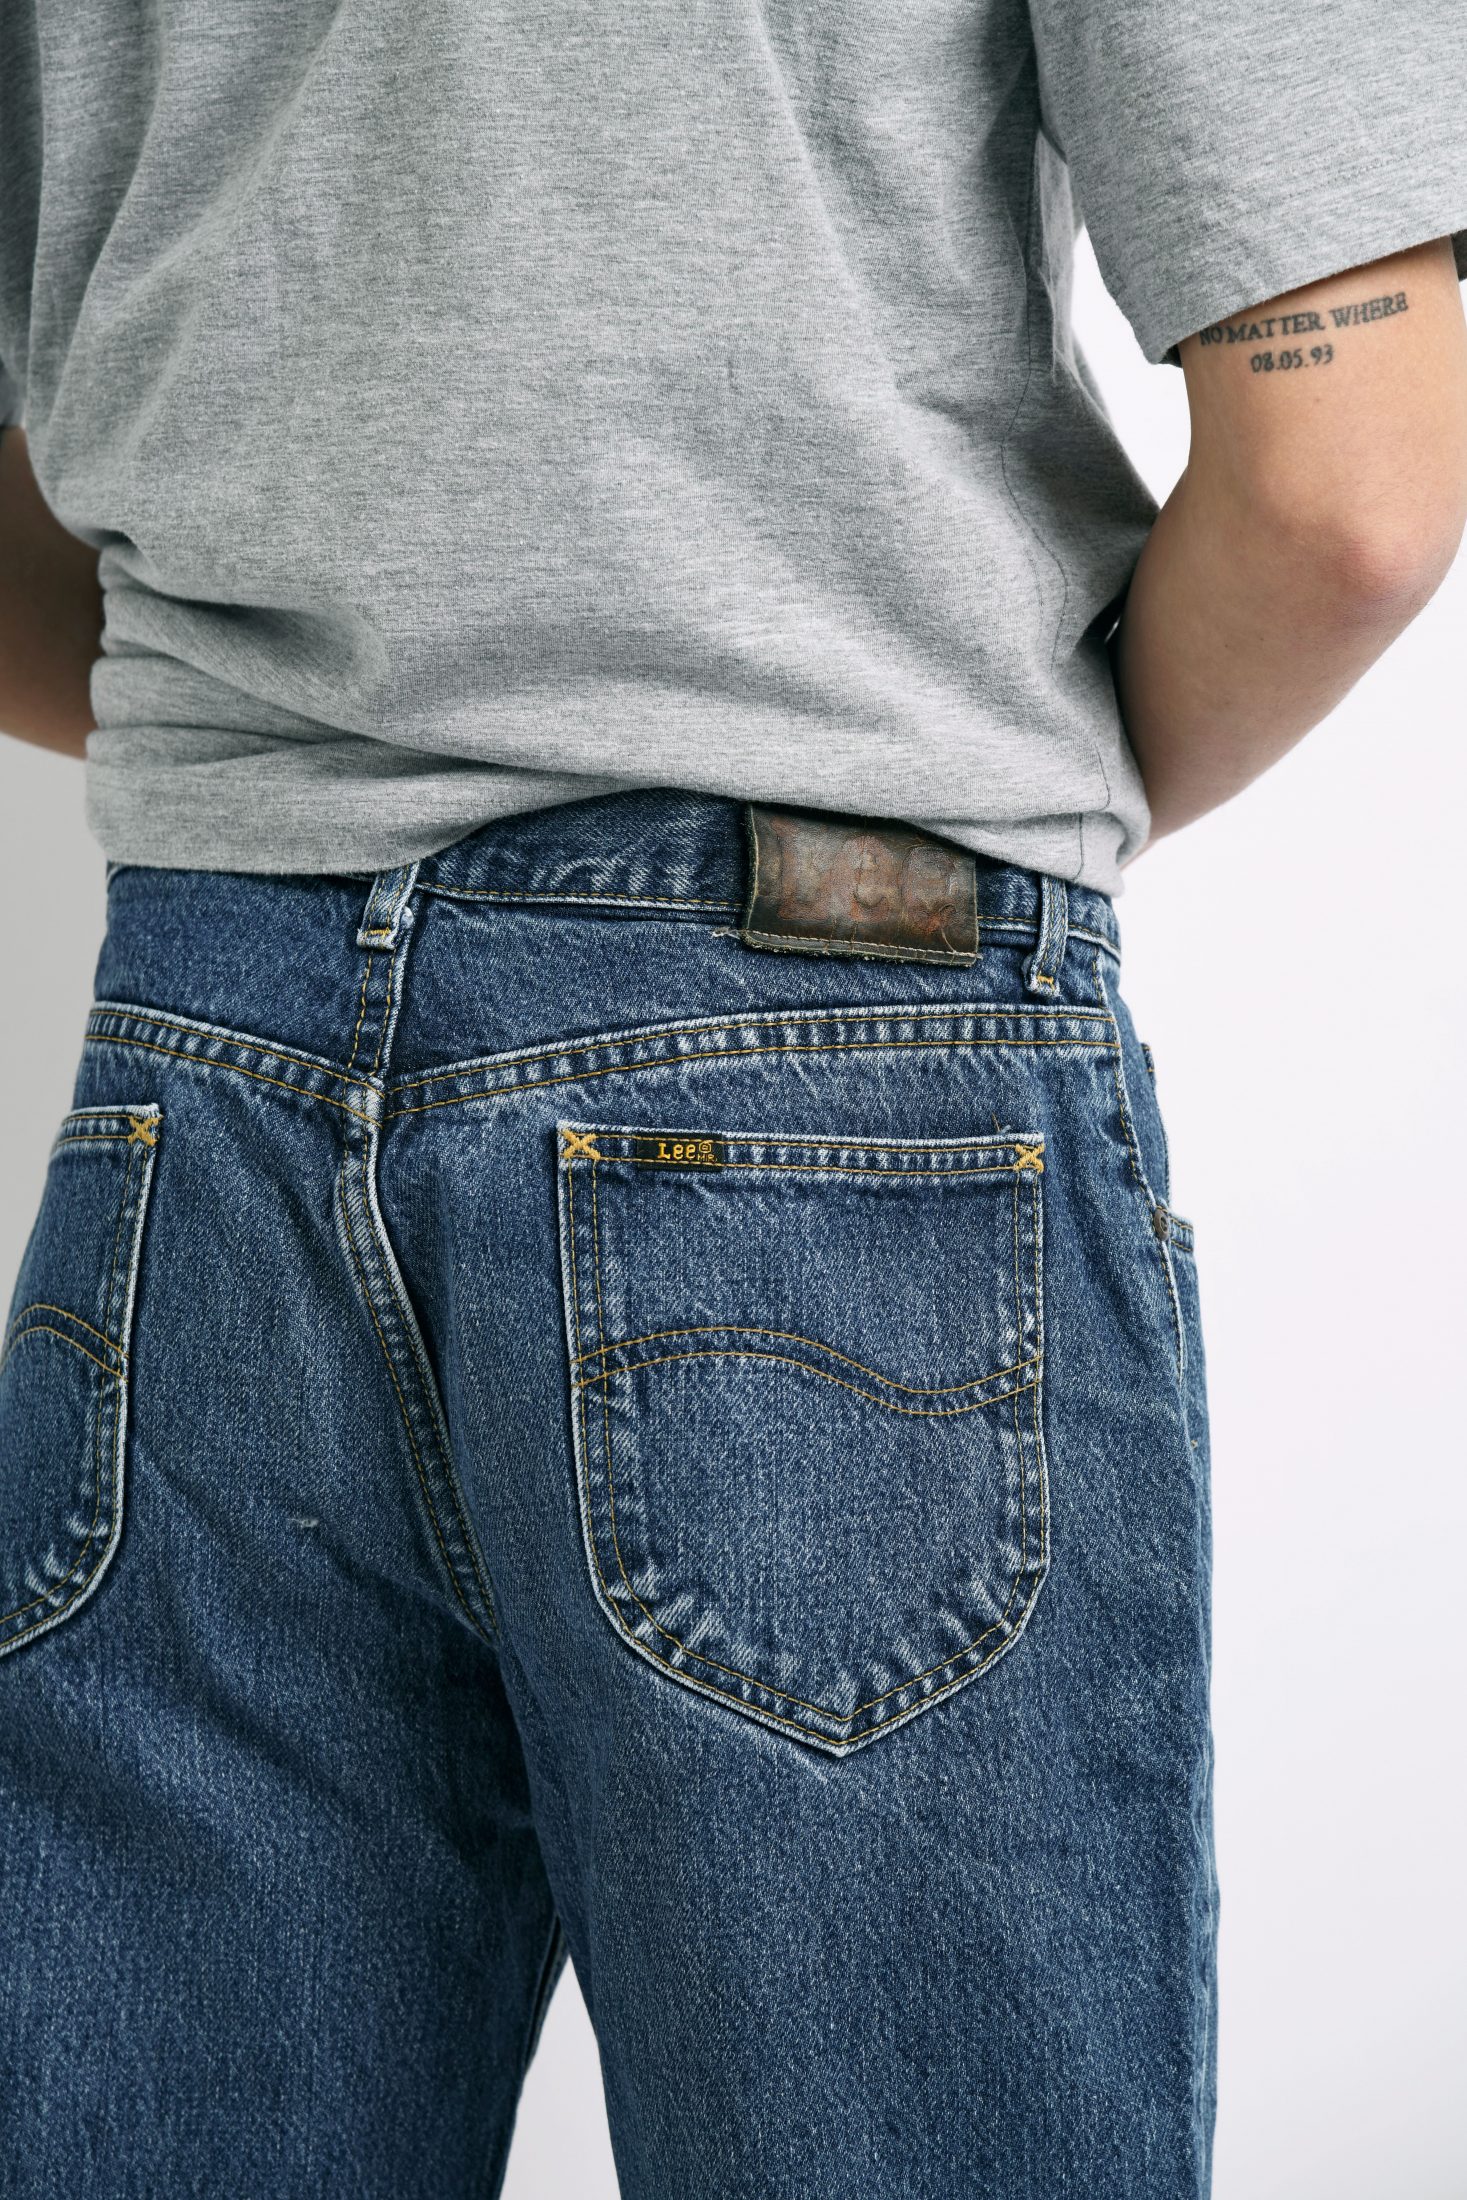 Vintage LEE mens jeans | HOT MILK vintage clothing online